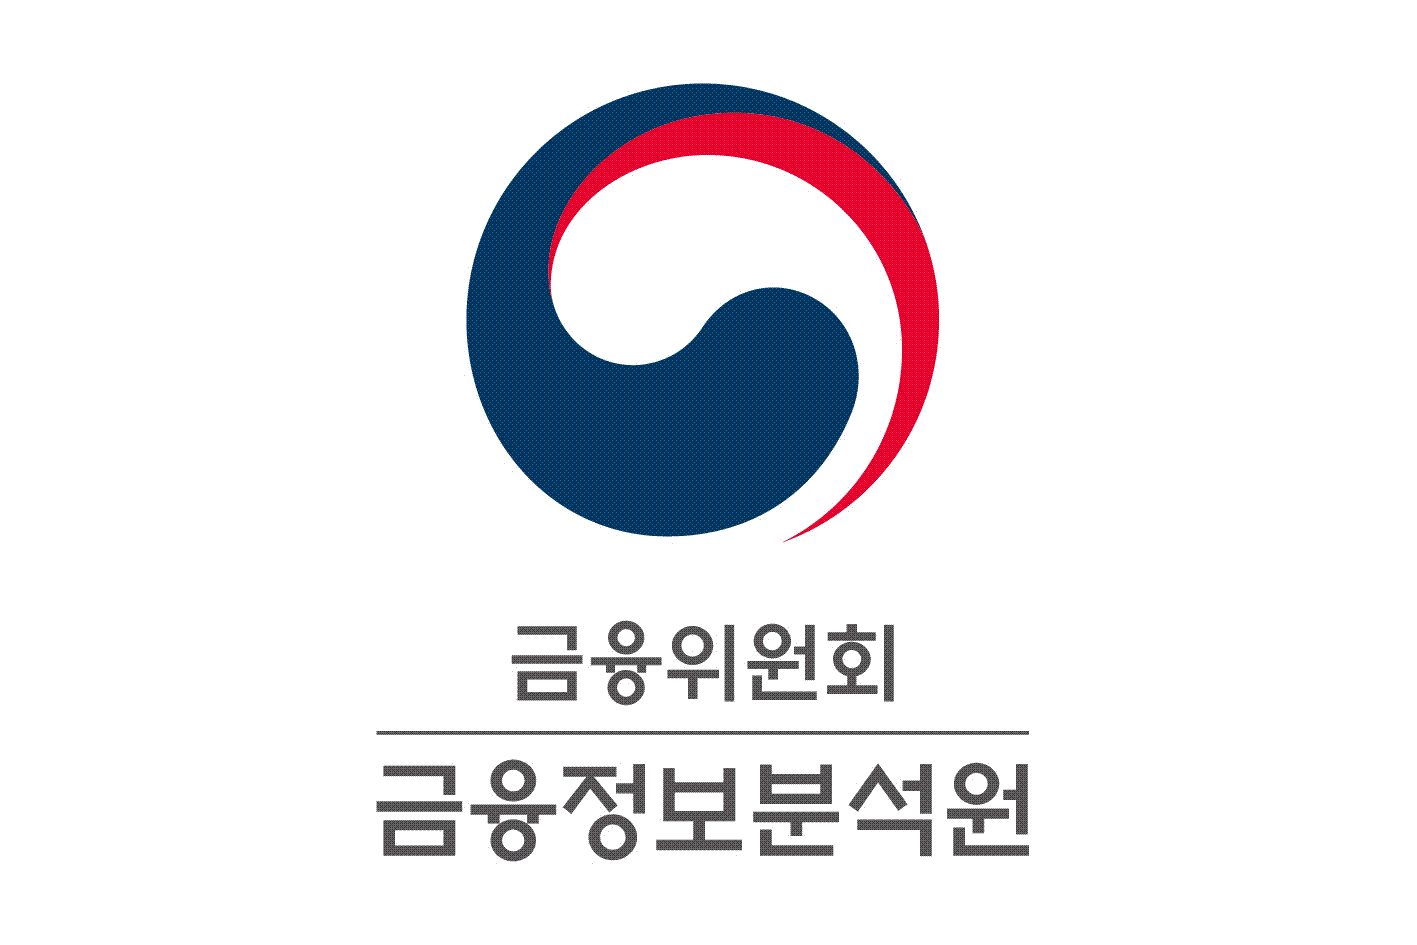 韓. FATF 총회 참석... 비영리단체의 테러자금조달 남용 방지